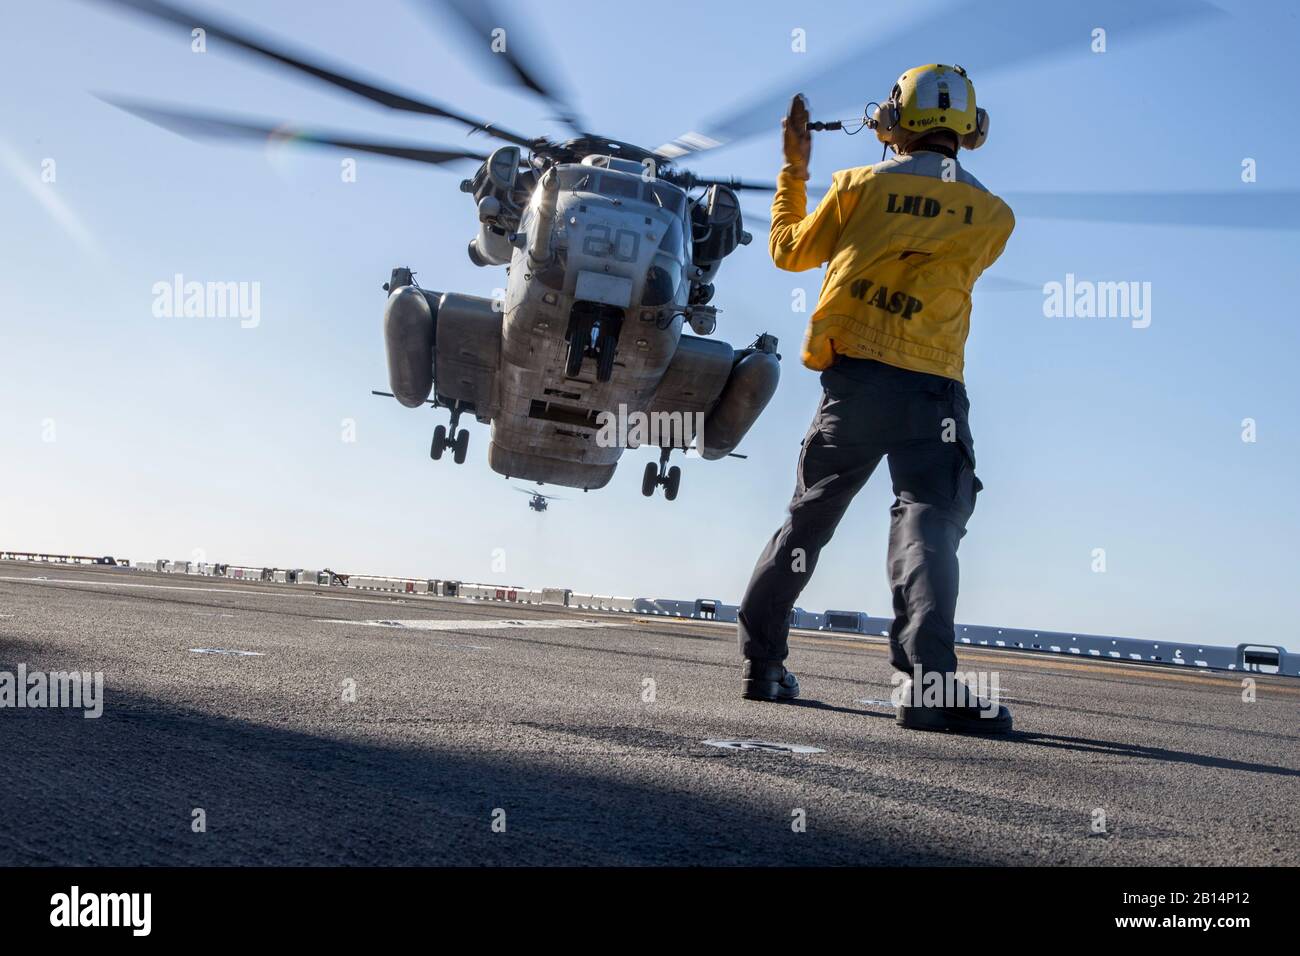 La aviación de la Marina de los EE.UU Boatswain's Mate (manejo) marinero Noel Kulloda señales al piloto de un tipo CH-53E Super Stallion asignado al escuadrón de helicópteros pesados de Marina (HMH) 361, aviones marinos Grupo 16, 3º Marine de alas de avión, durante las calificaciones de aterrizaje de cubierta a bordo del USS Essex (LHD-2) como parte del ejercicio Alba Blitz en el océano Pacífico frente a las costas de California el 21 de octubre de 2017. Amanecer Blitz es un escenario-driven ejercicio anfibio realizado entre Expeditionary Strike Group 3 y 1ª Brigada Expedicionaria de la Marina, probando su capacidad para llevar a cabo operaciones anfibias en respuesta a las crisis mundiales y a proy. Foto de stock